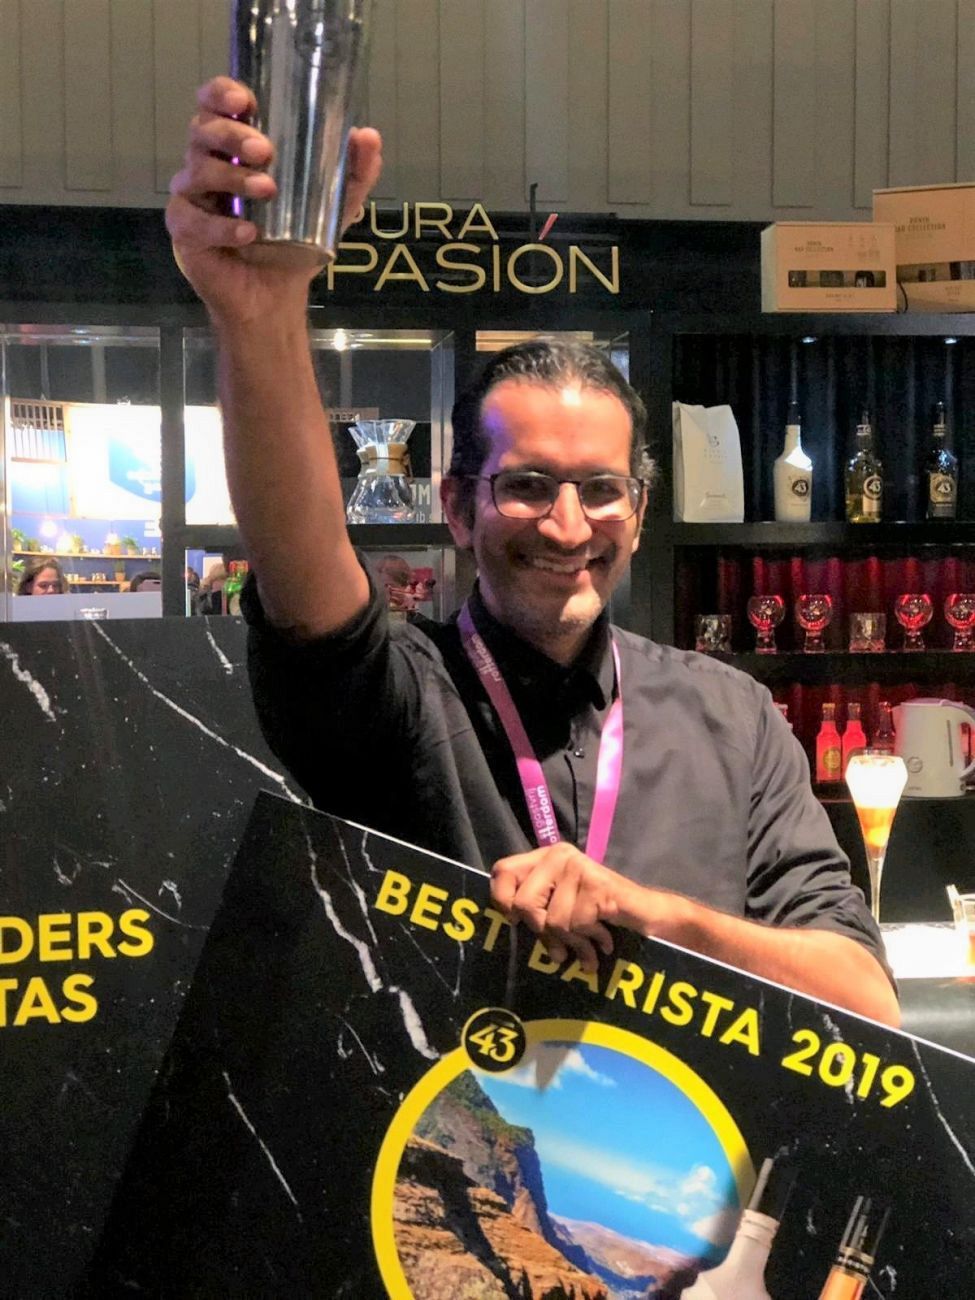 De beste barista 2019 is een Schiedammer